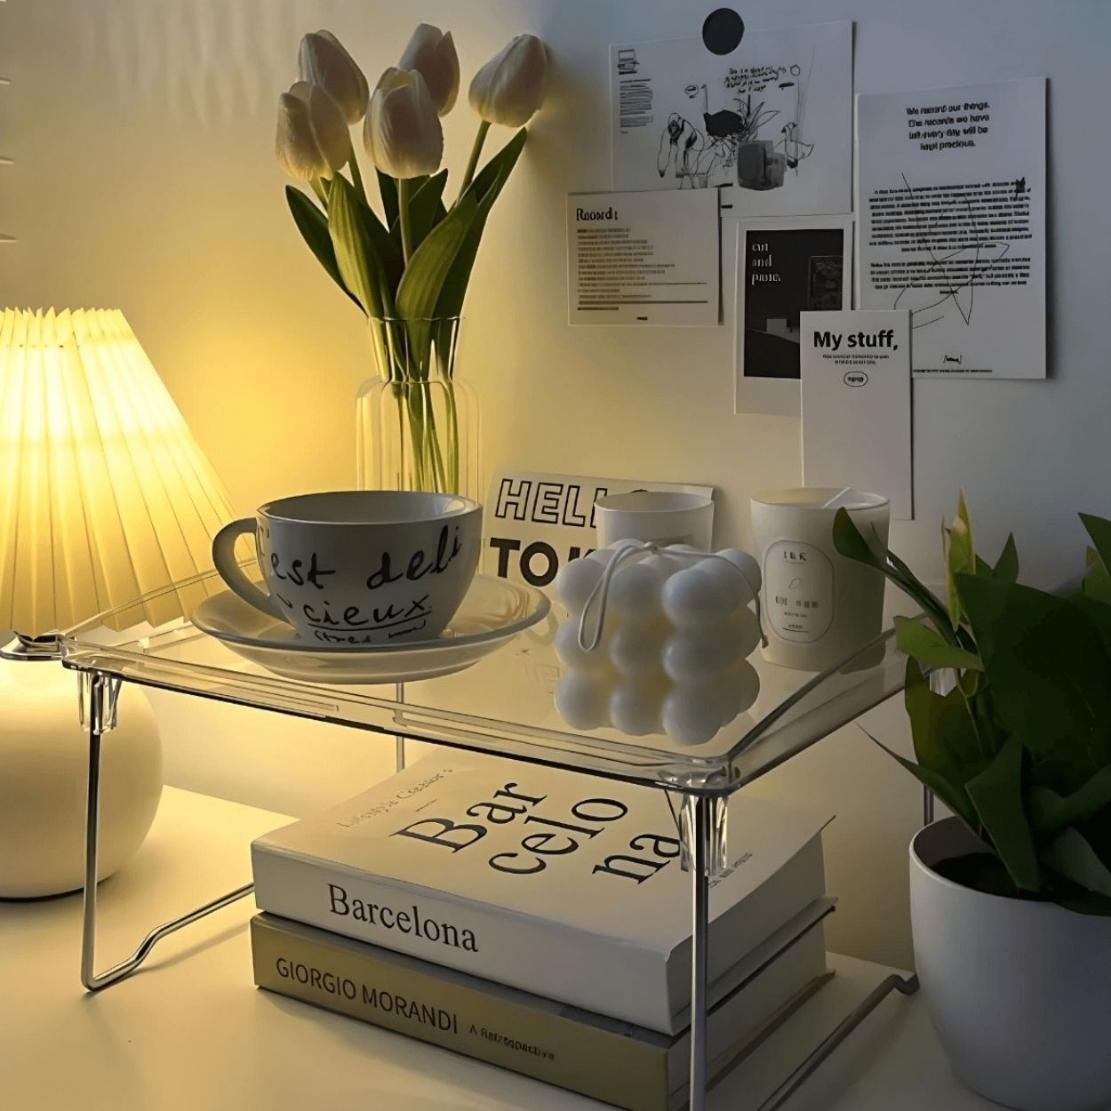 Foldable acrylic storage shelf with books, candle, mug and vase